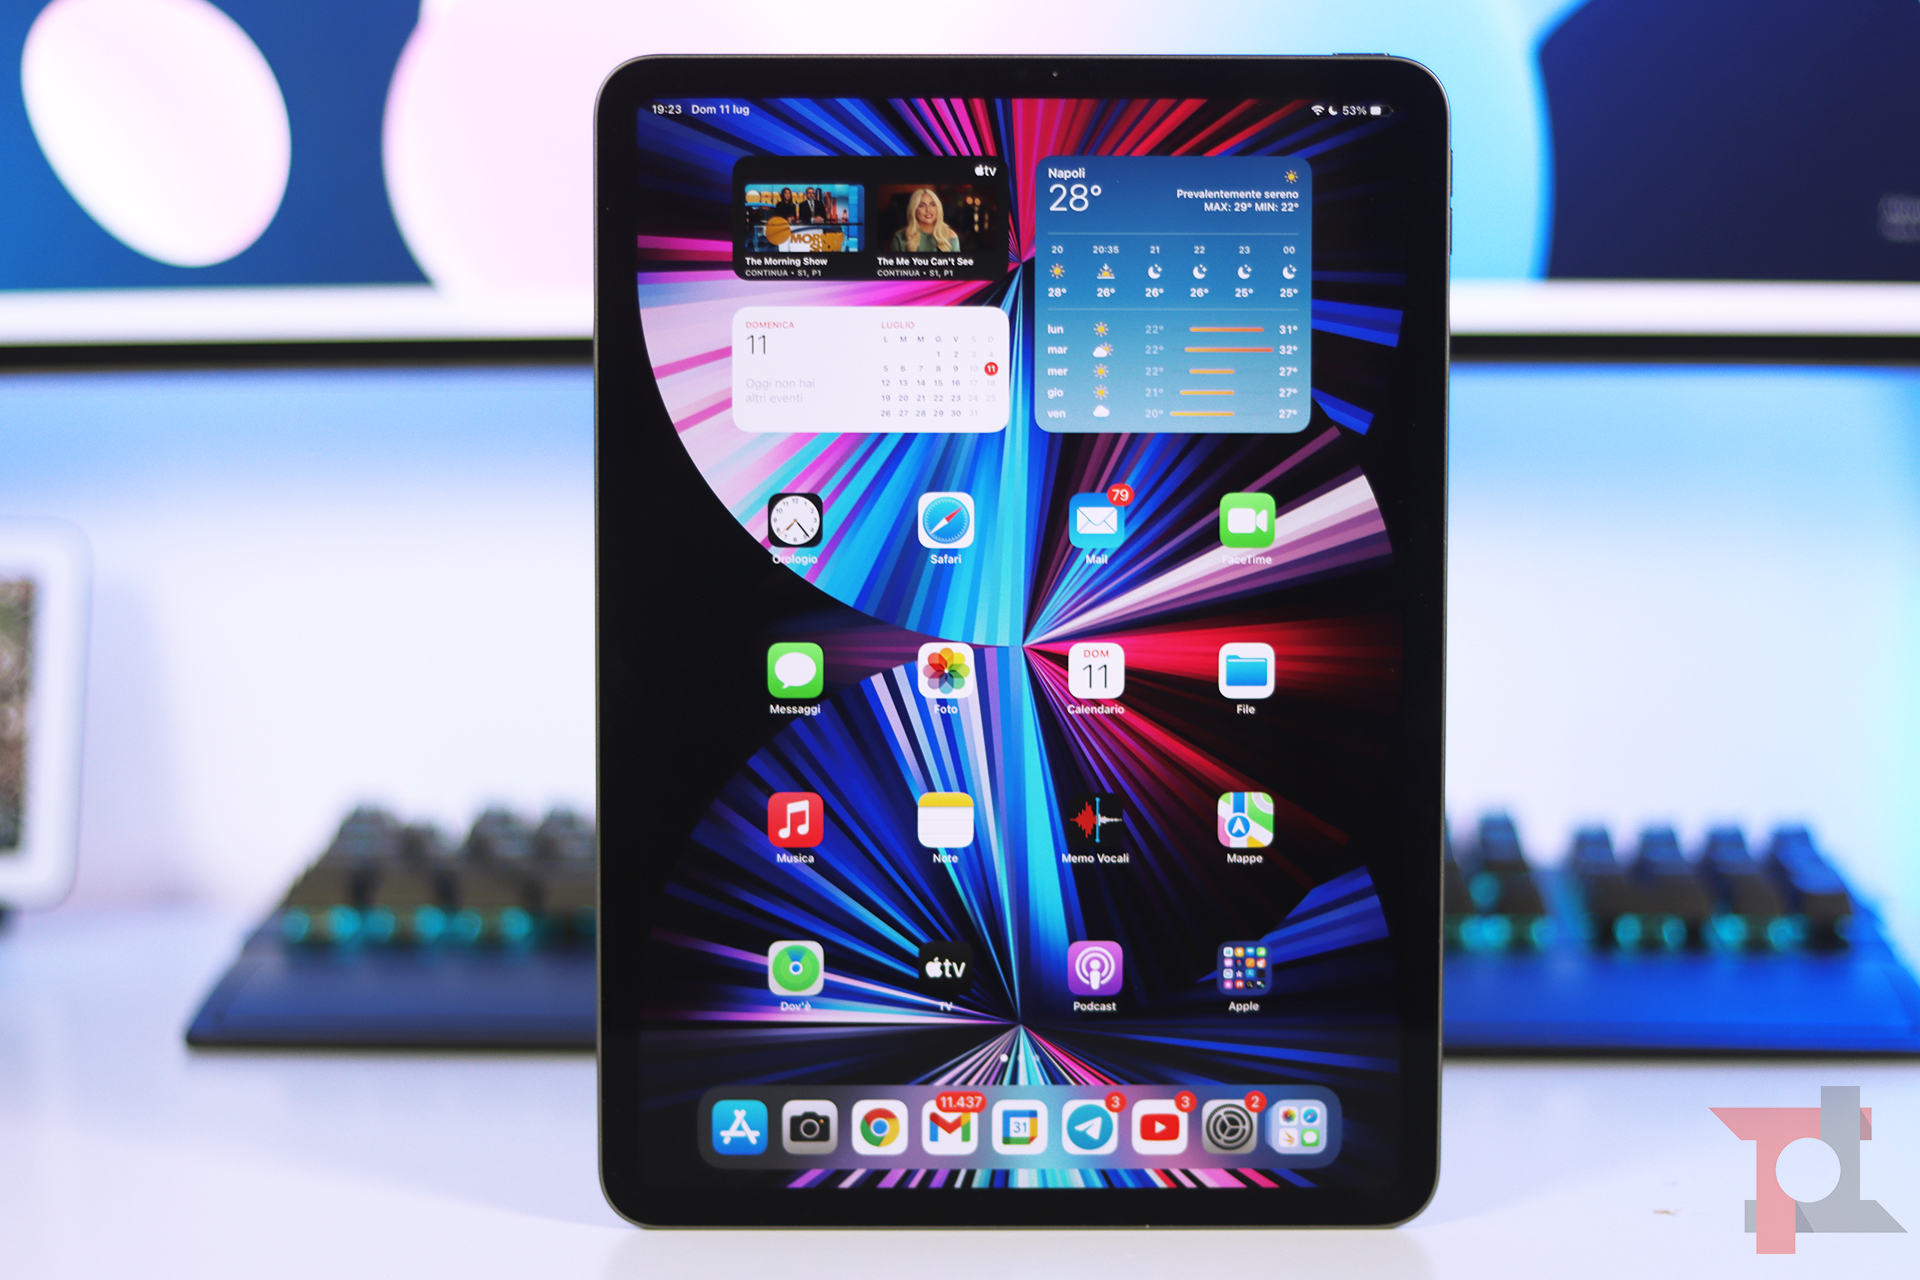 iPad Air e Samsung Galaxy Tab 3: prezzi, promozioni e sconti aggiornati